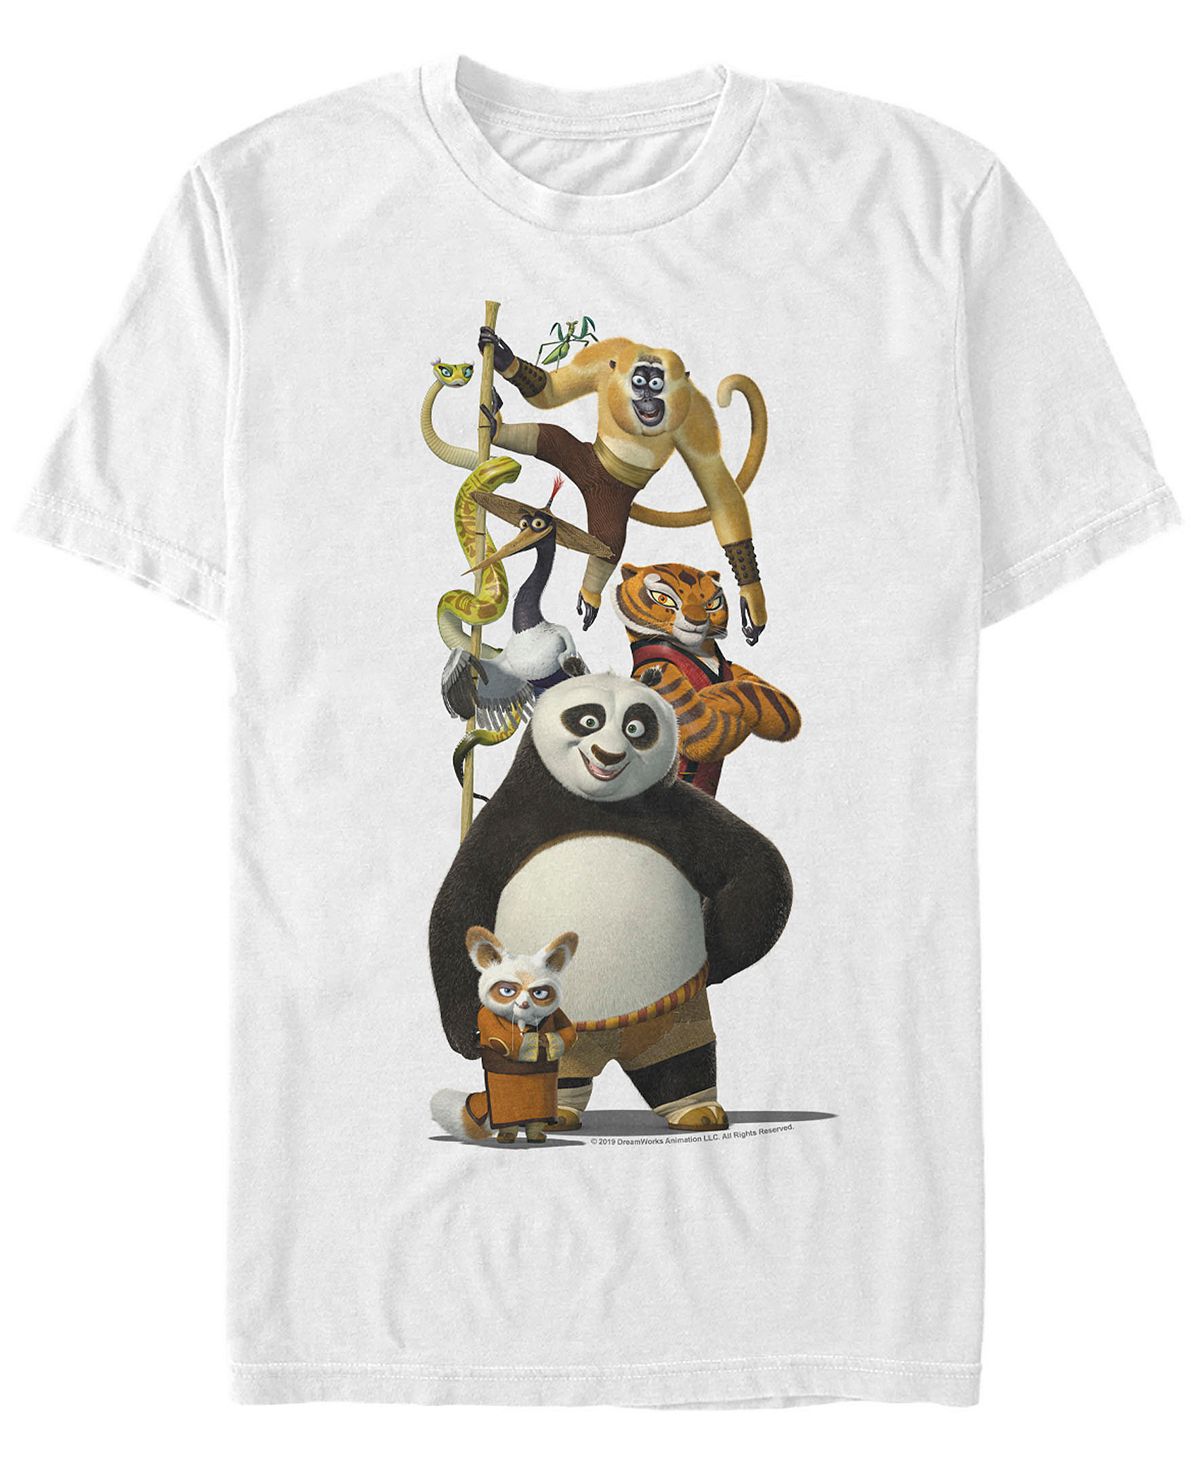 Мужская футболка с короткими рукавами по и друзья кунг-фу панда Fifth Sun, белый printio футболка классическая кунг фу панда